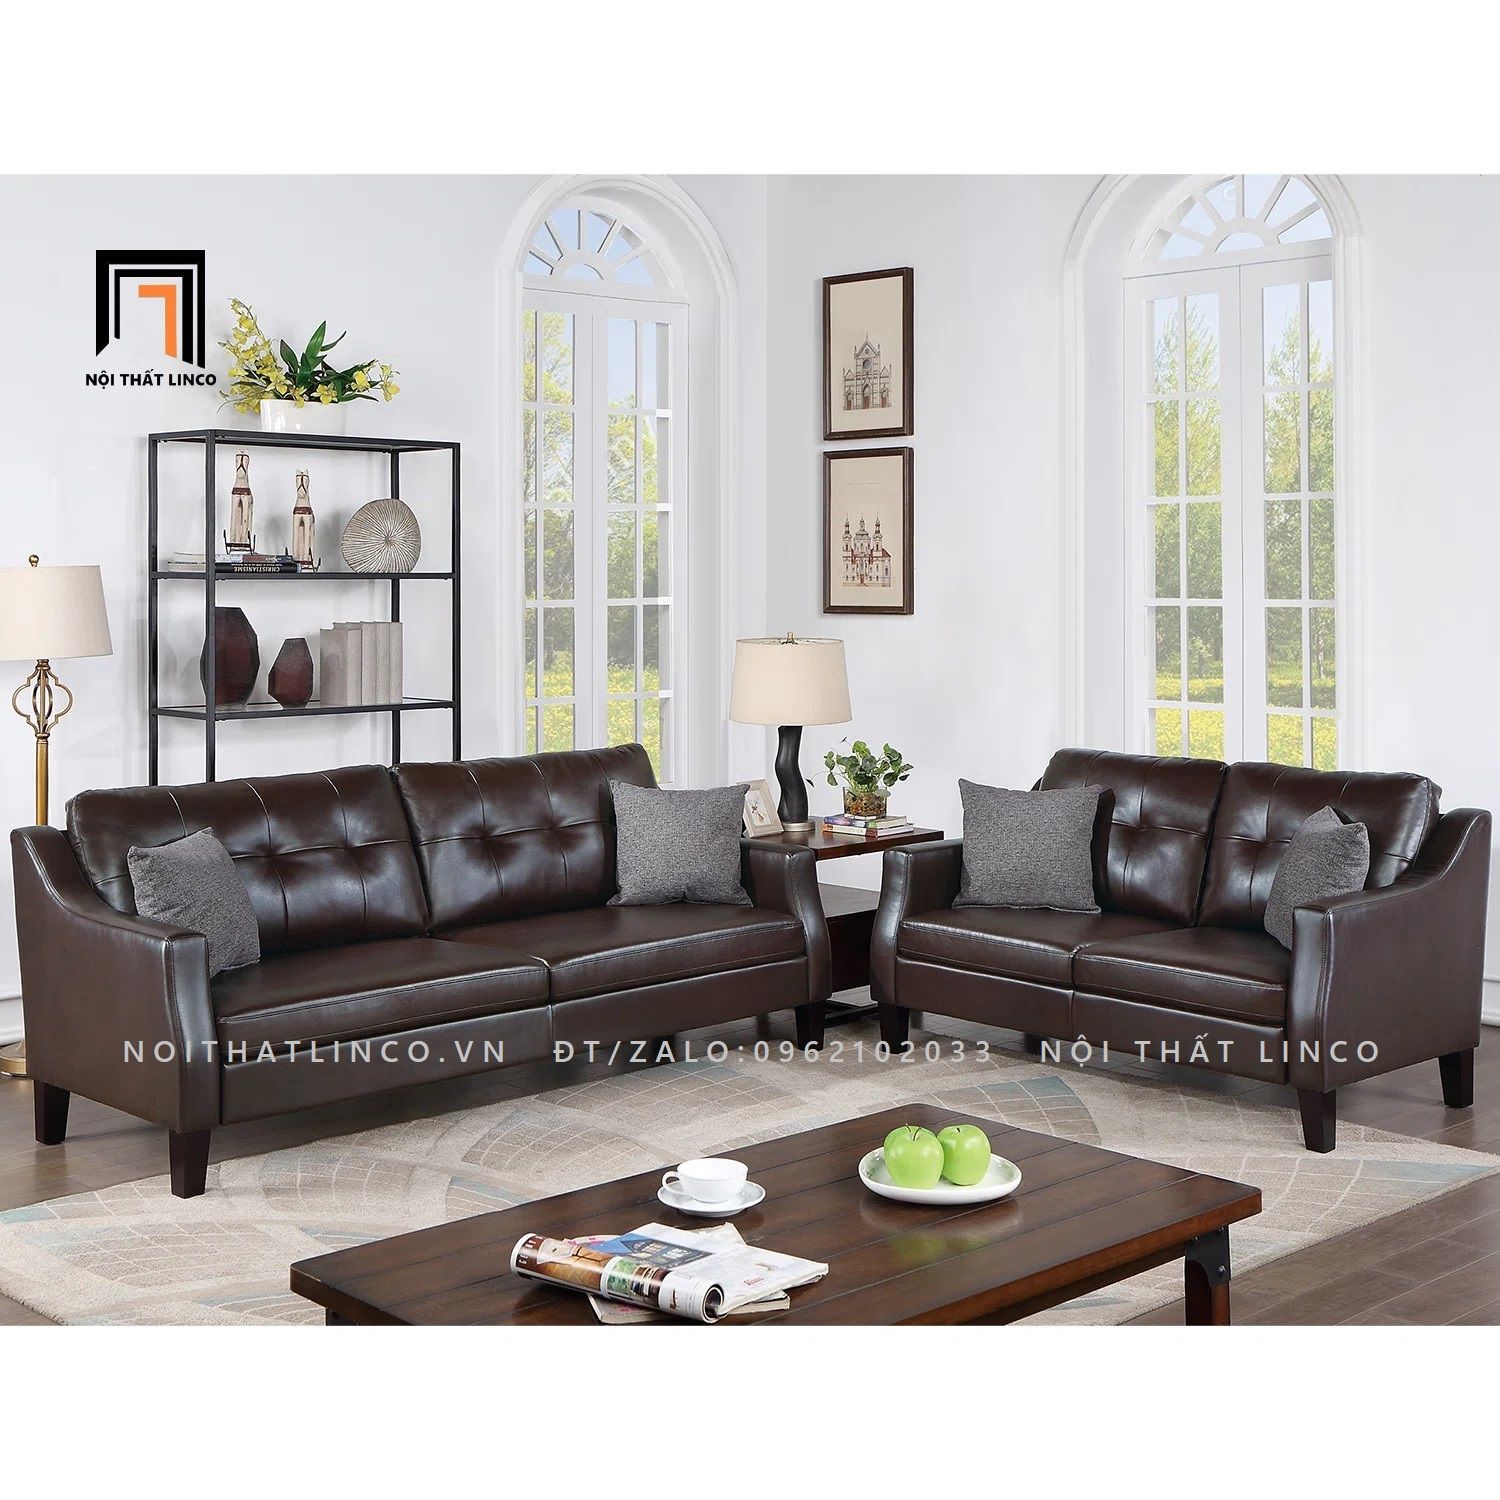  Bộ ghế sofa da công nghiệp KT39 Winir cho phòng khách gia đình 